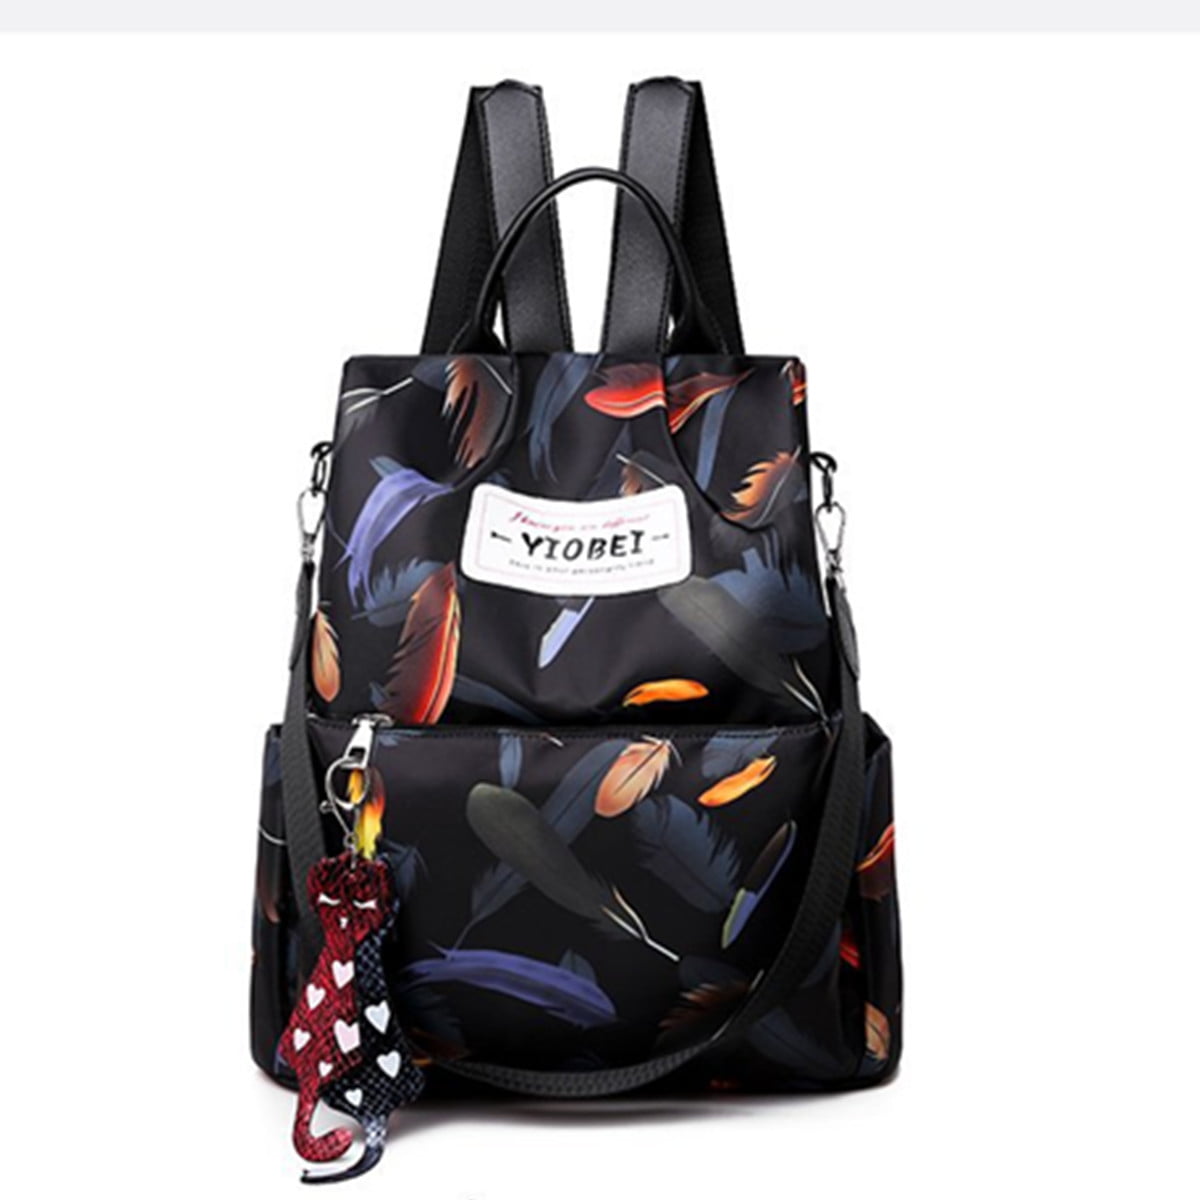 Details about   Women Anti-Theft School Backpack Girls Shoulder Bag Travel Rucksack Handbag Tote